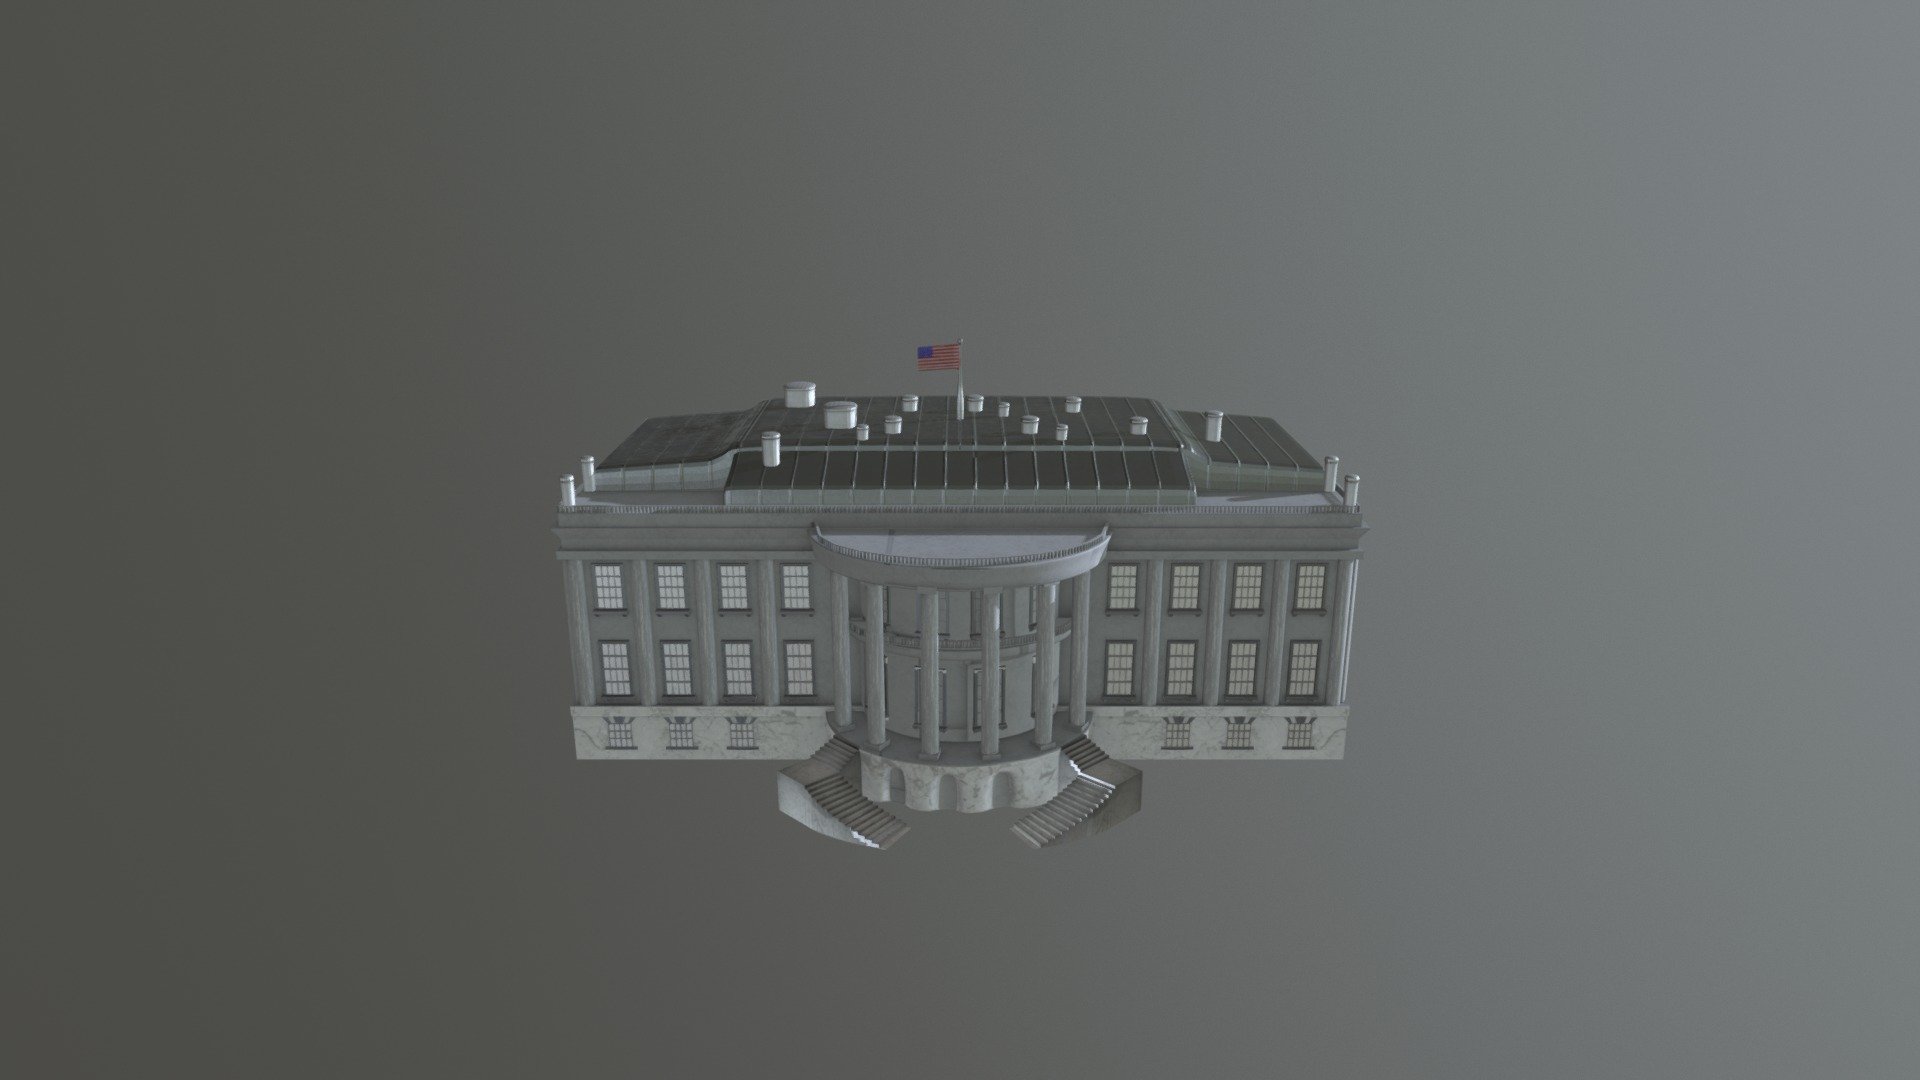 White House - White House KubaKrise - 3D model by maxwoedl 3d model